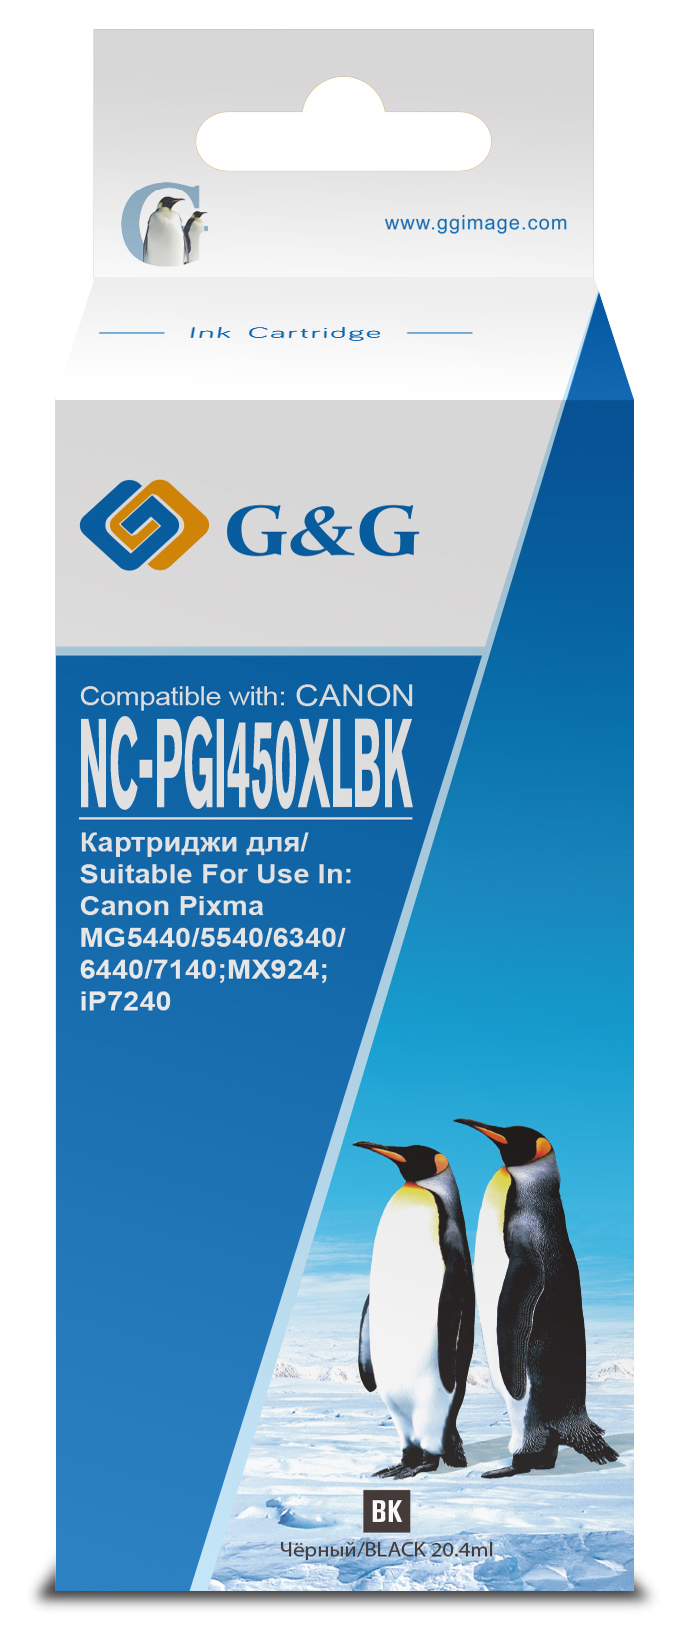 nc-pgi450xlbk_1